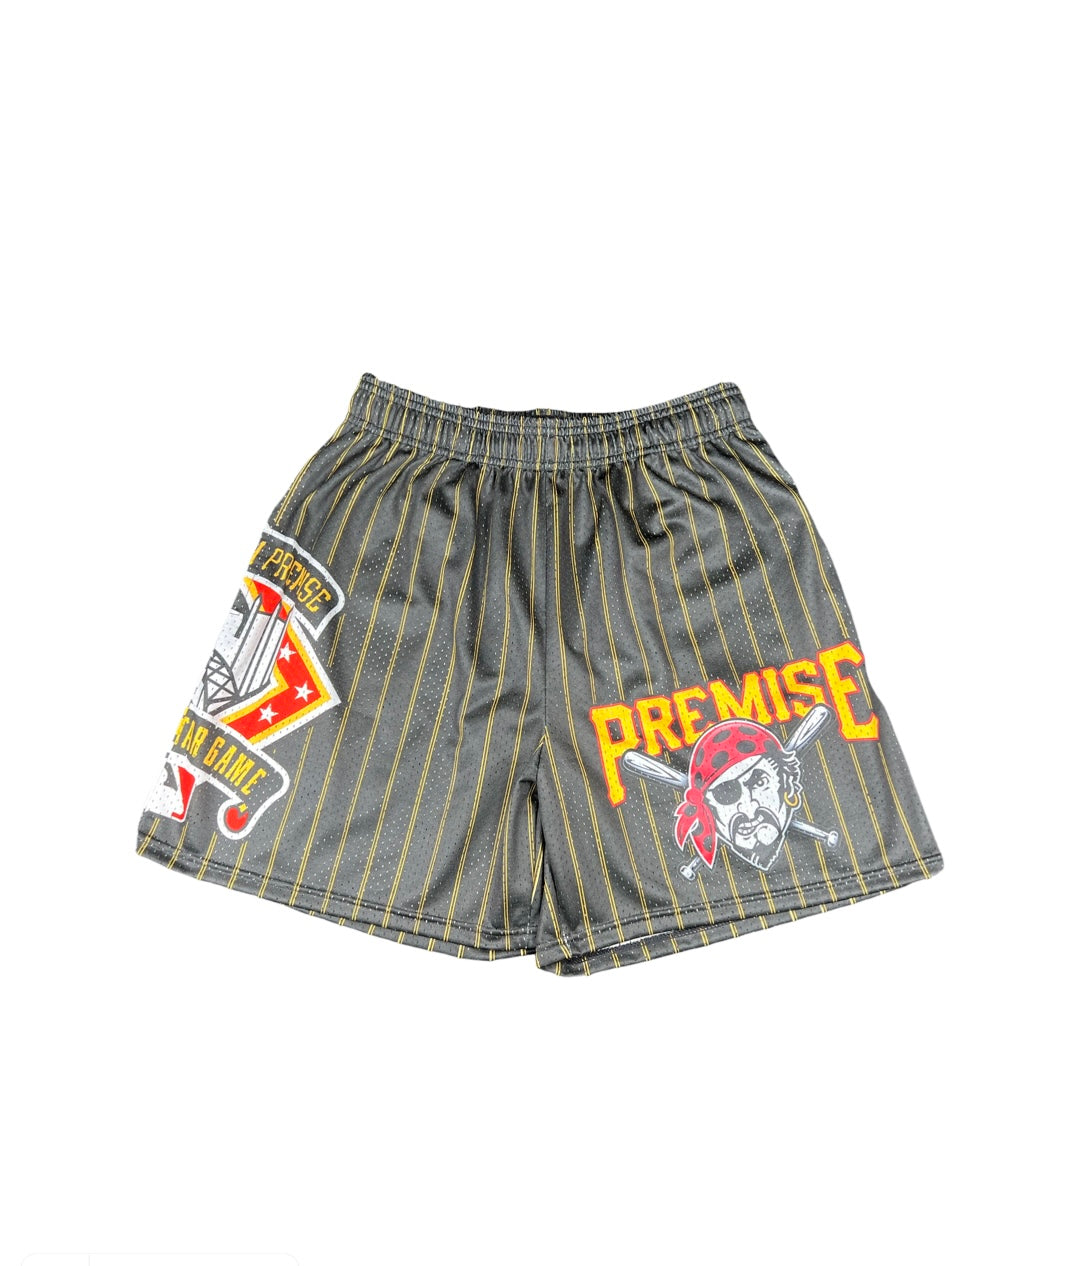 Stl Cardinals (Premise) Mesh Shorts, Small